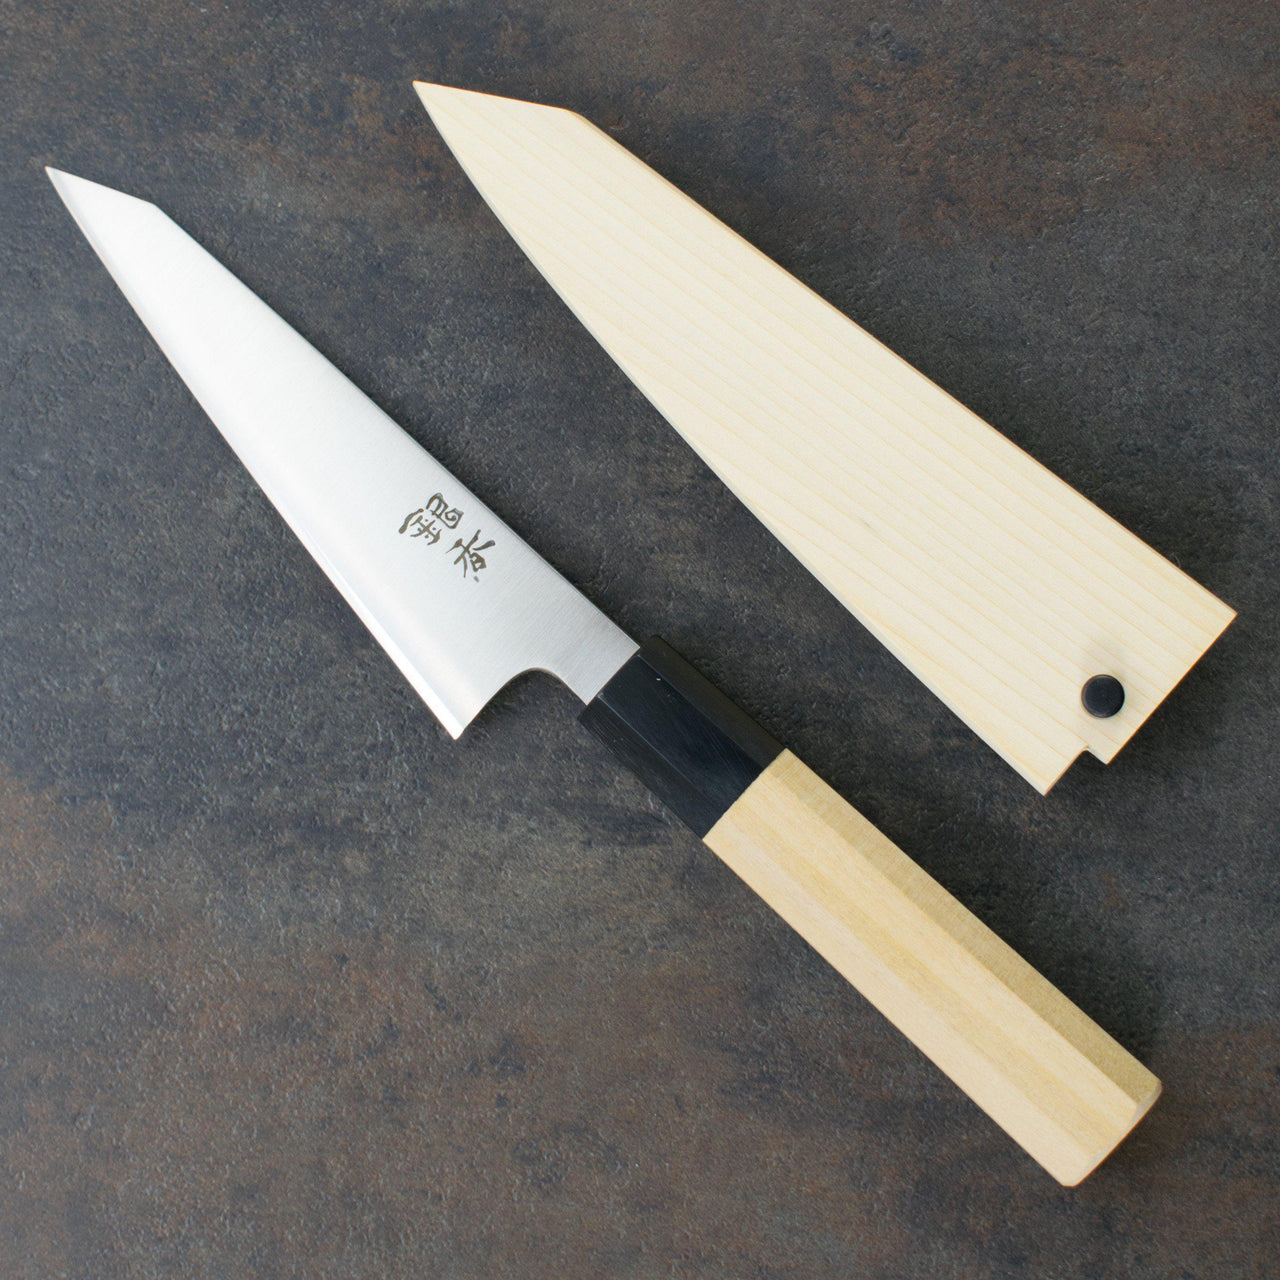 Ashi Ginga Stainless LEFT Handed Honesuki 150mm-Knife-Ashi Hamono-Carbon Knife Co